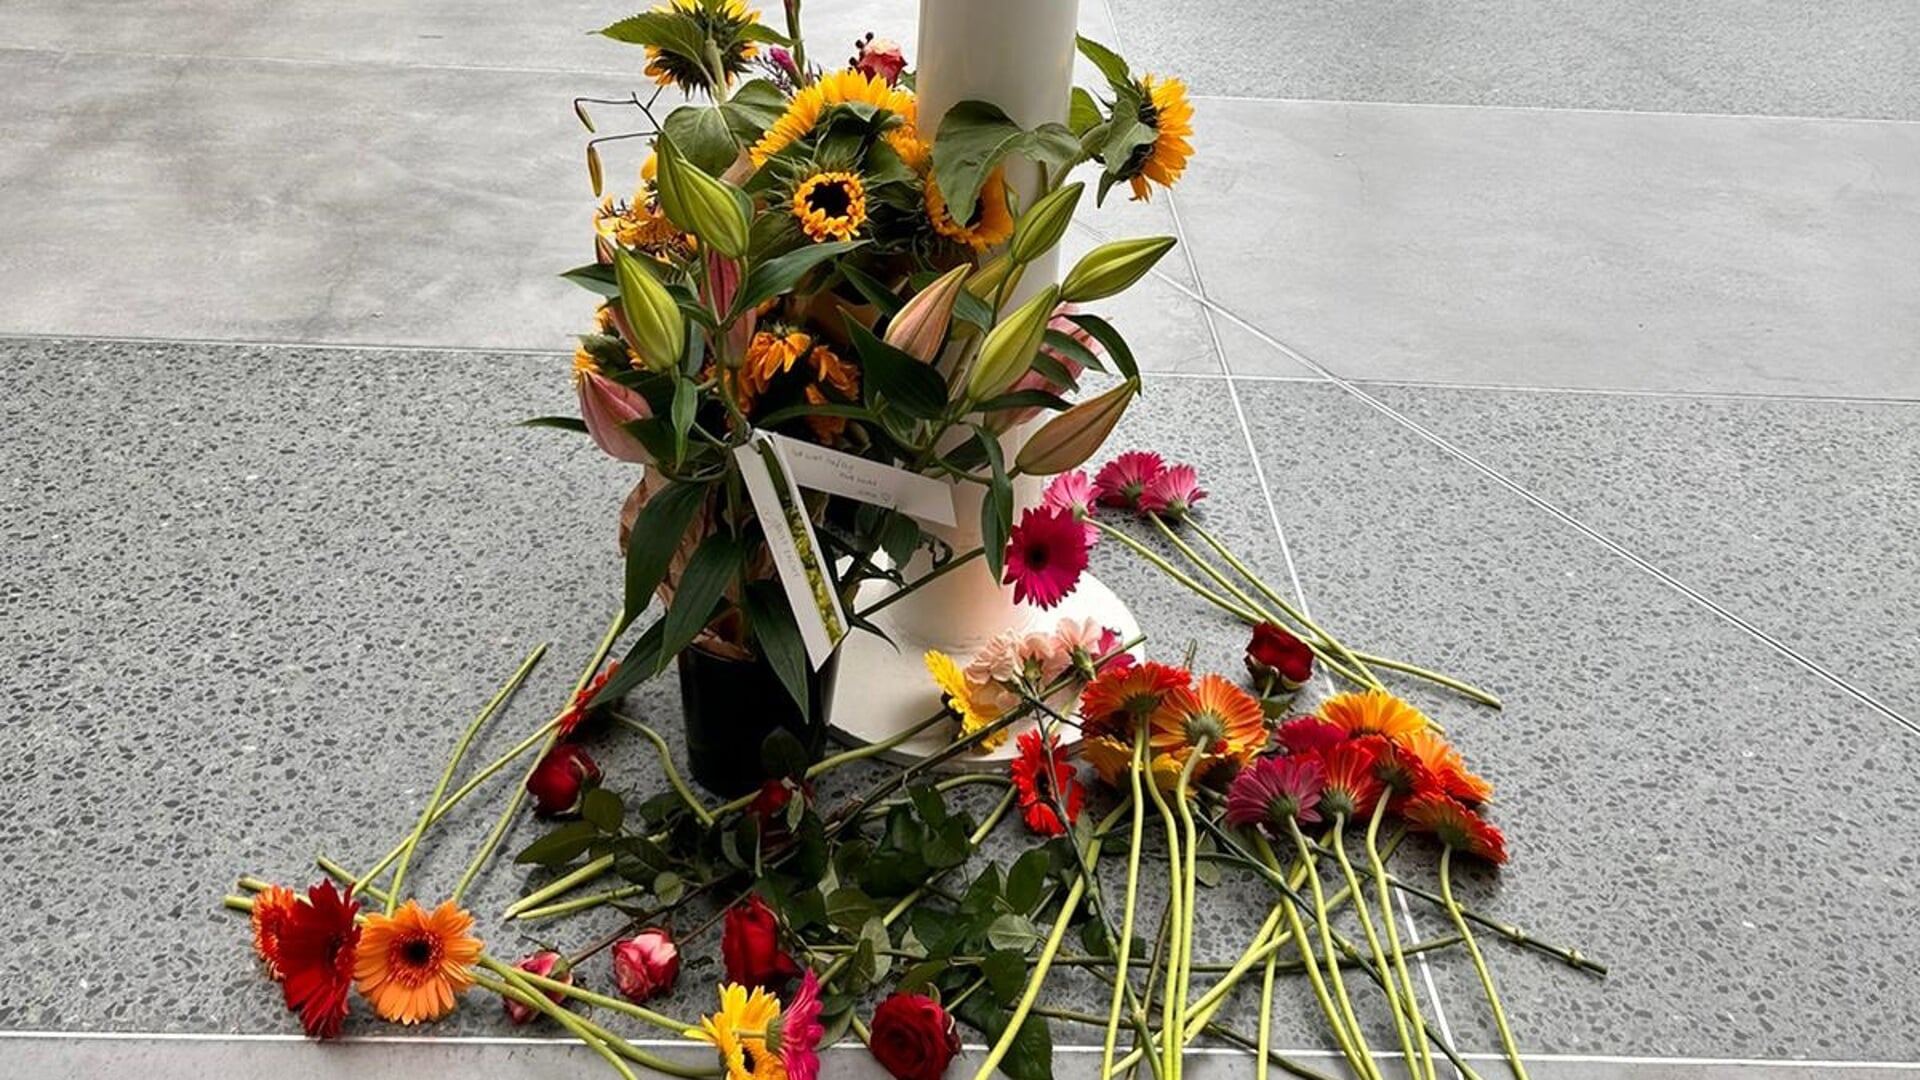 Bloemen ter nagedachtenis van Jurgen Damen in het Erasmus MC.